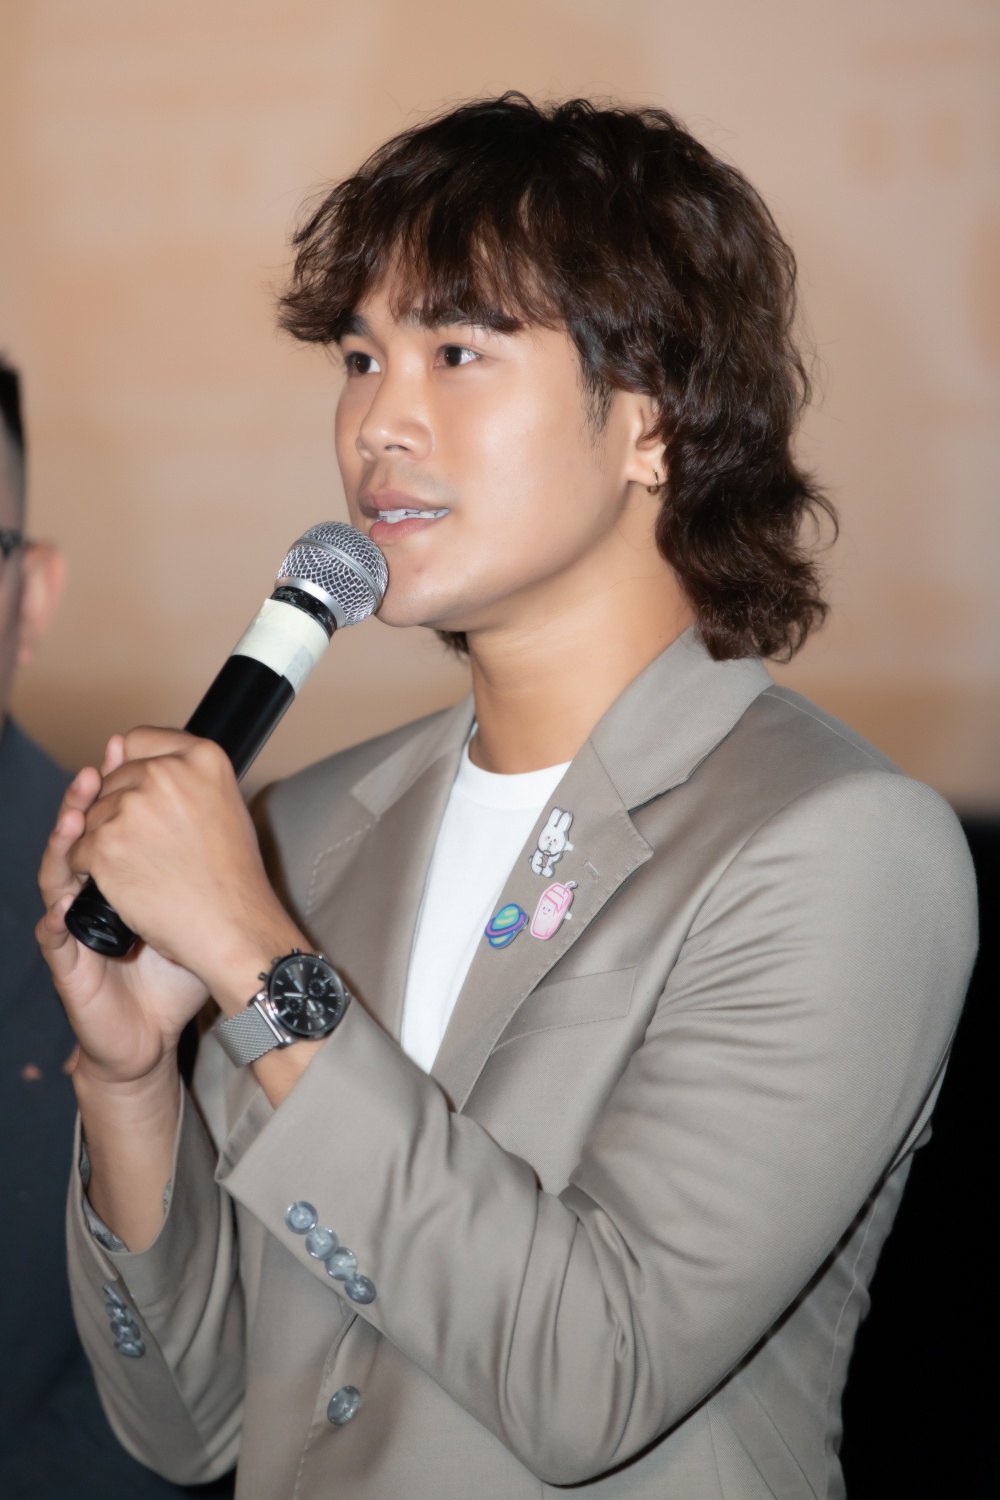 Trần Phong cho biết vai diễn lần này lấy nhiều cảm xúc nhất trong suốt quá trình làm nghề của mình